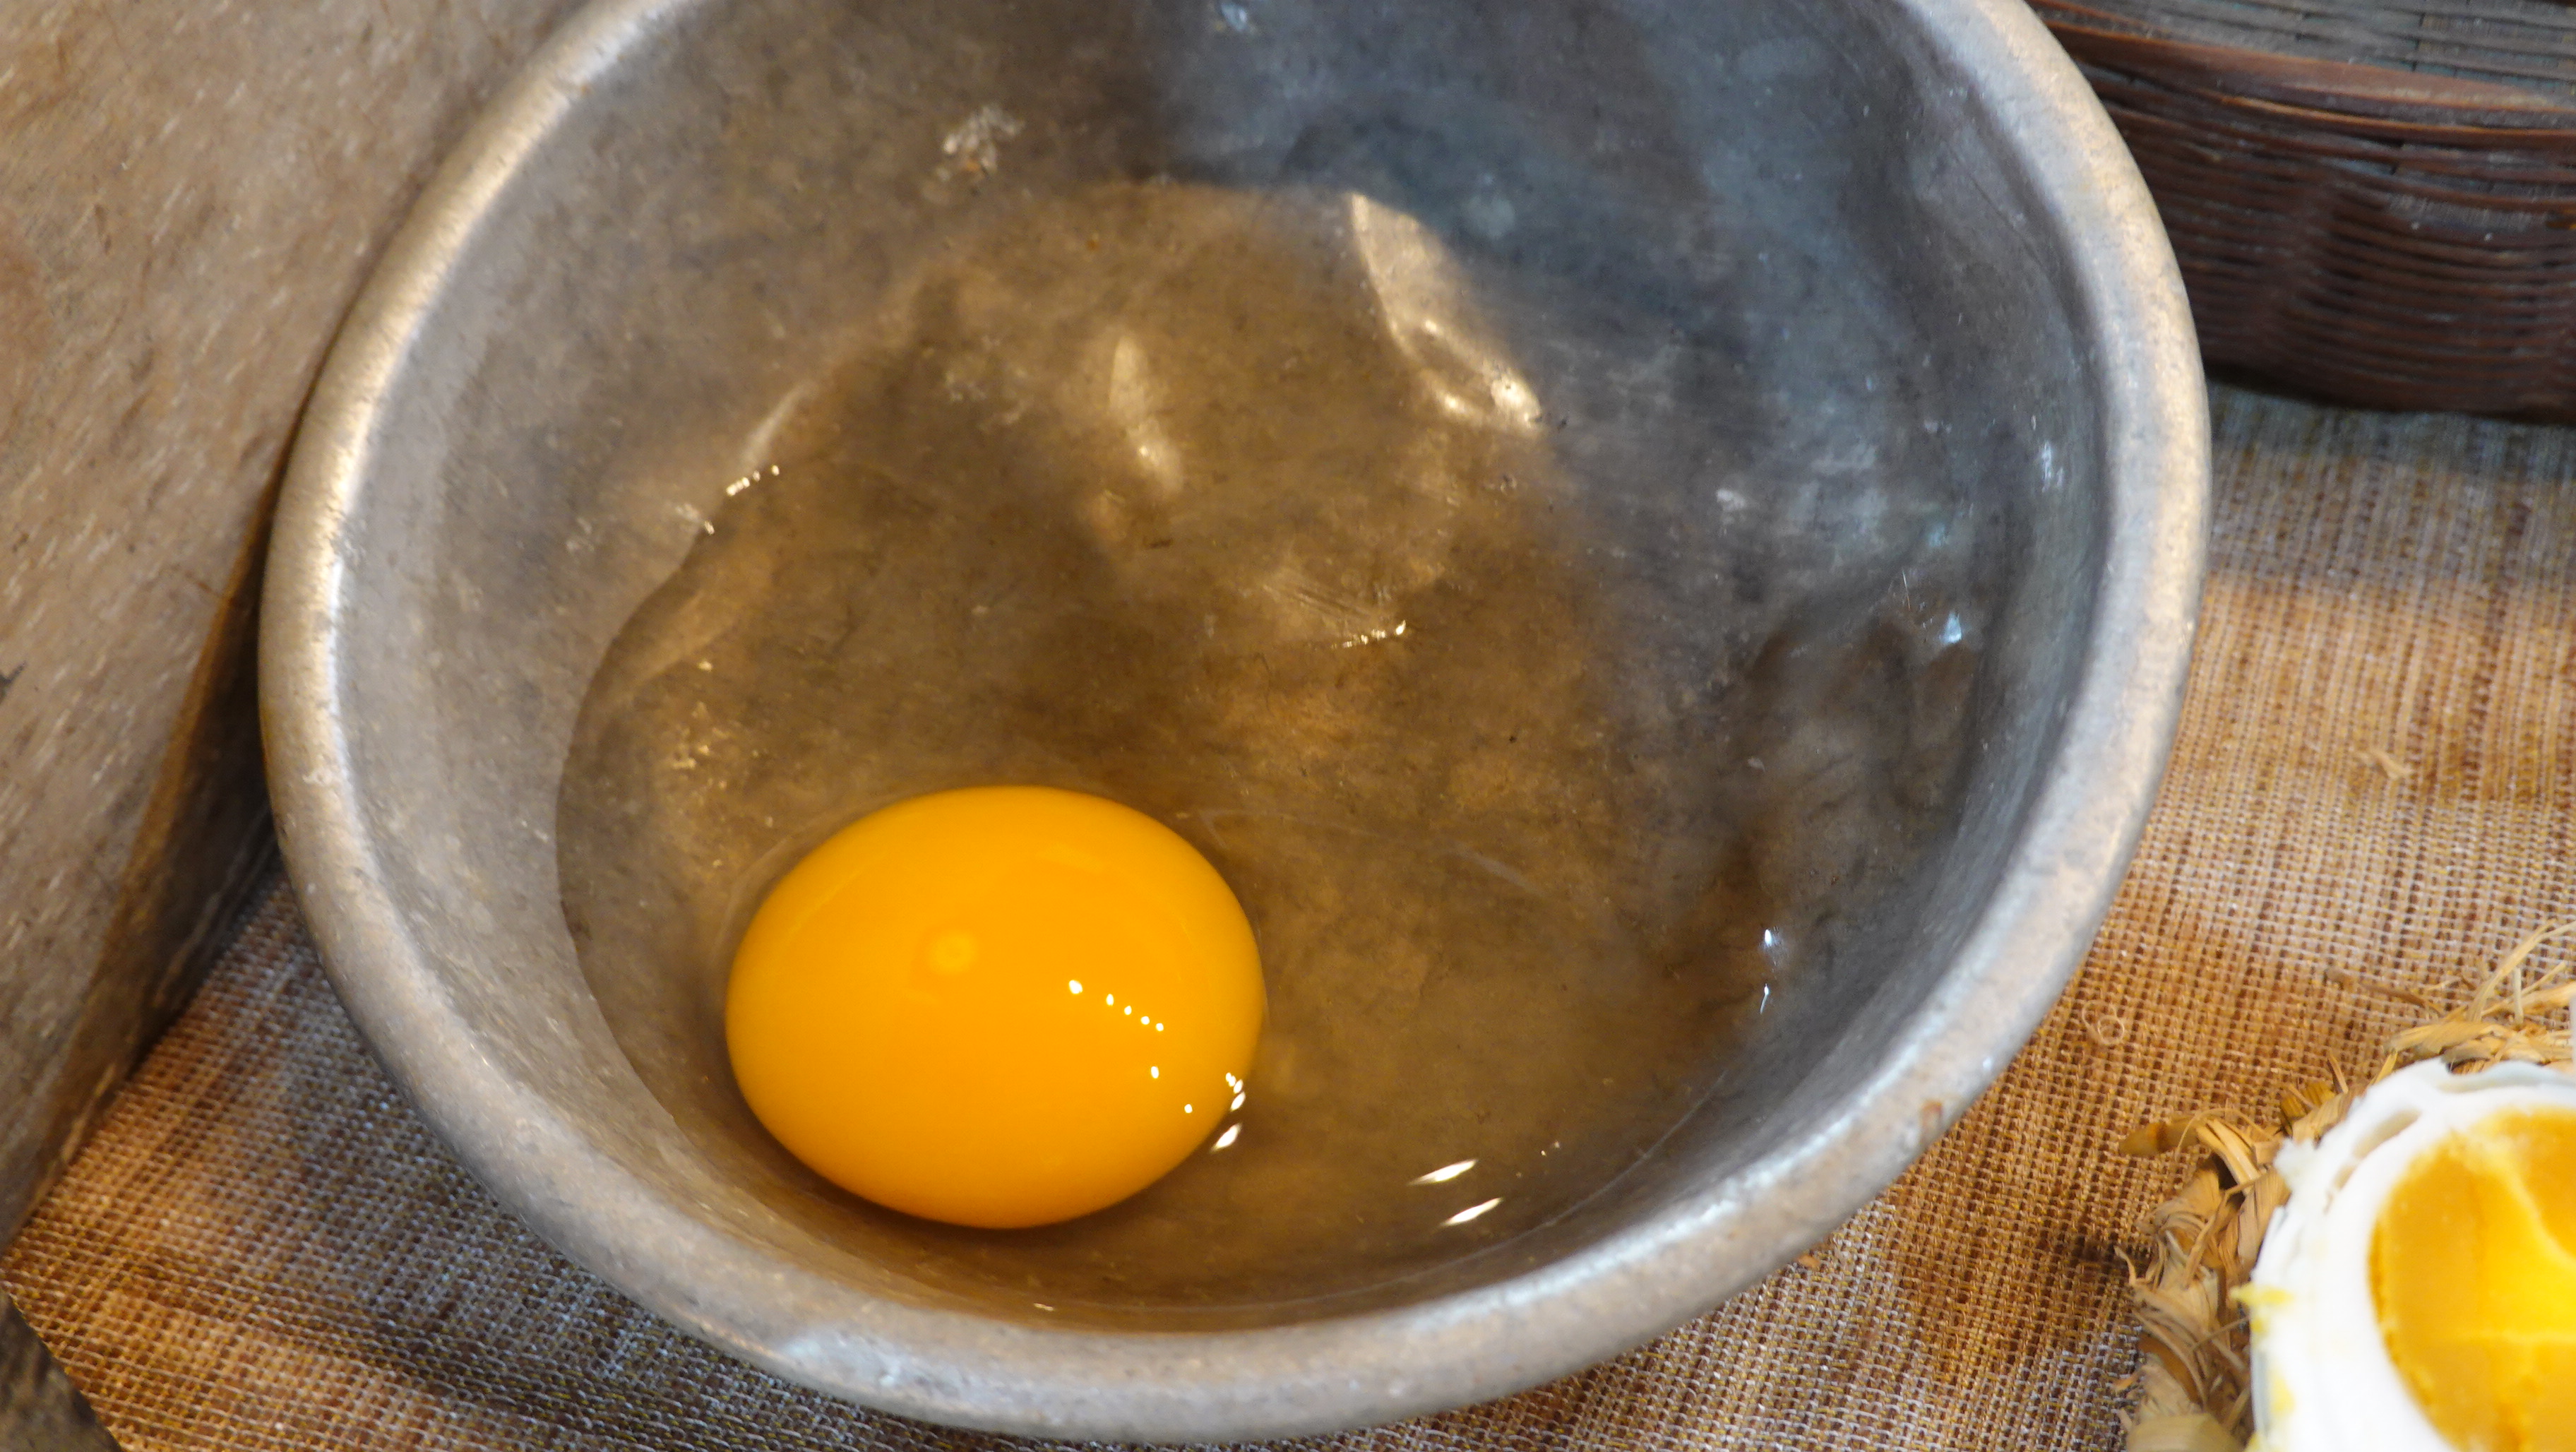 善待母雞才能生好蛋，惜食低碳、友善環境的永續飲食行動